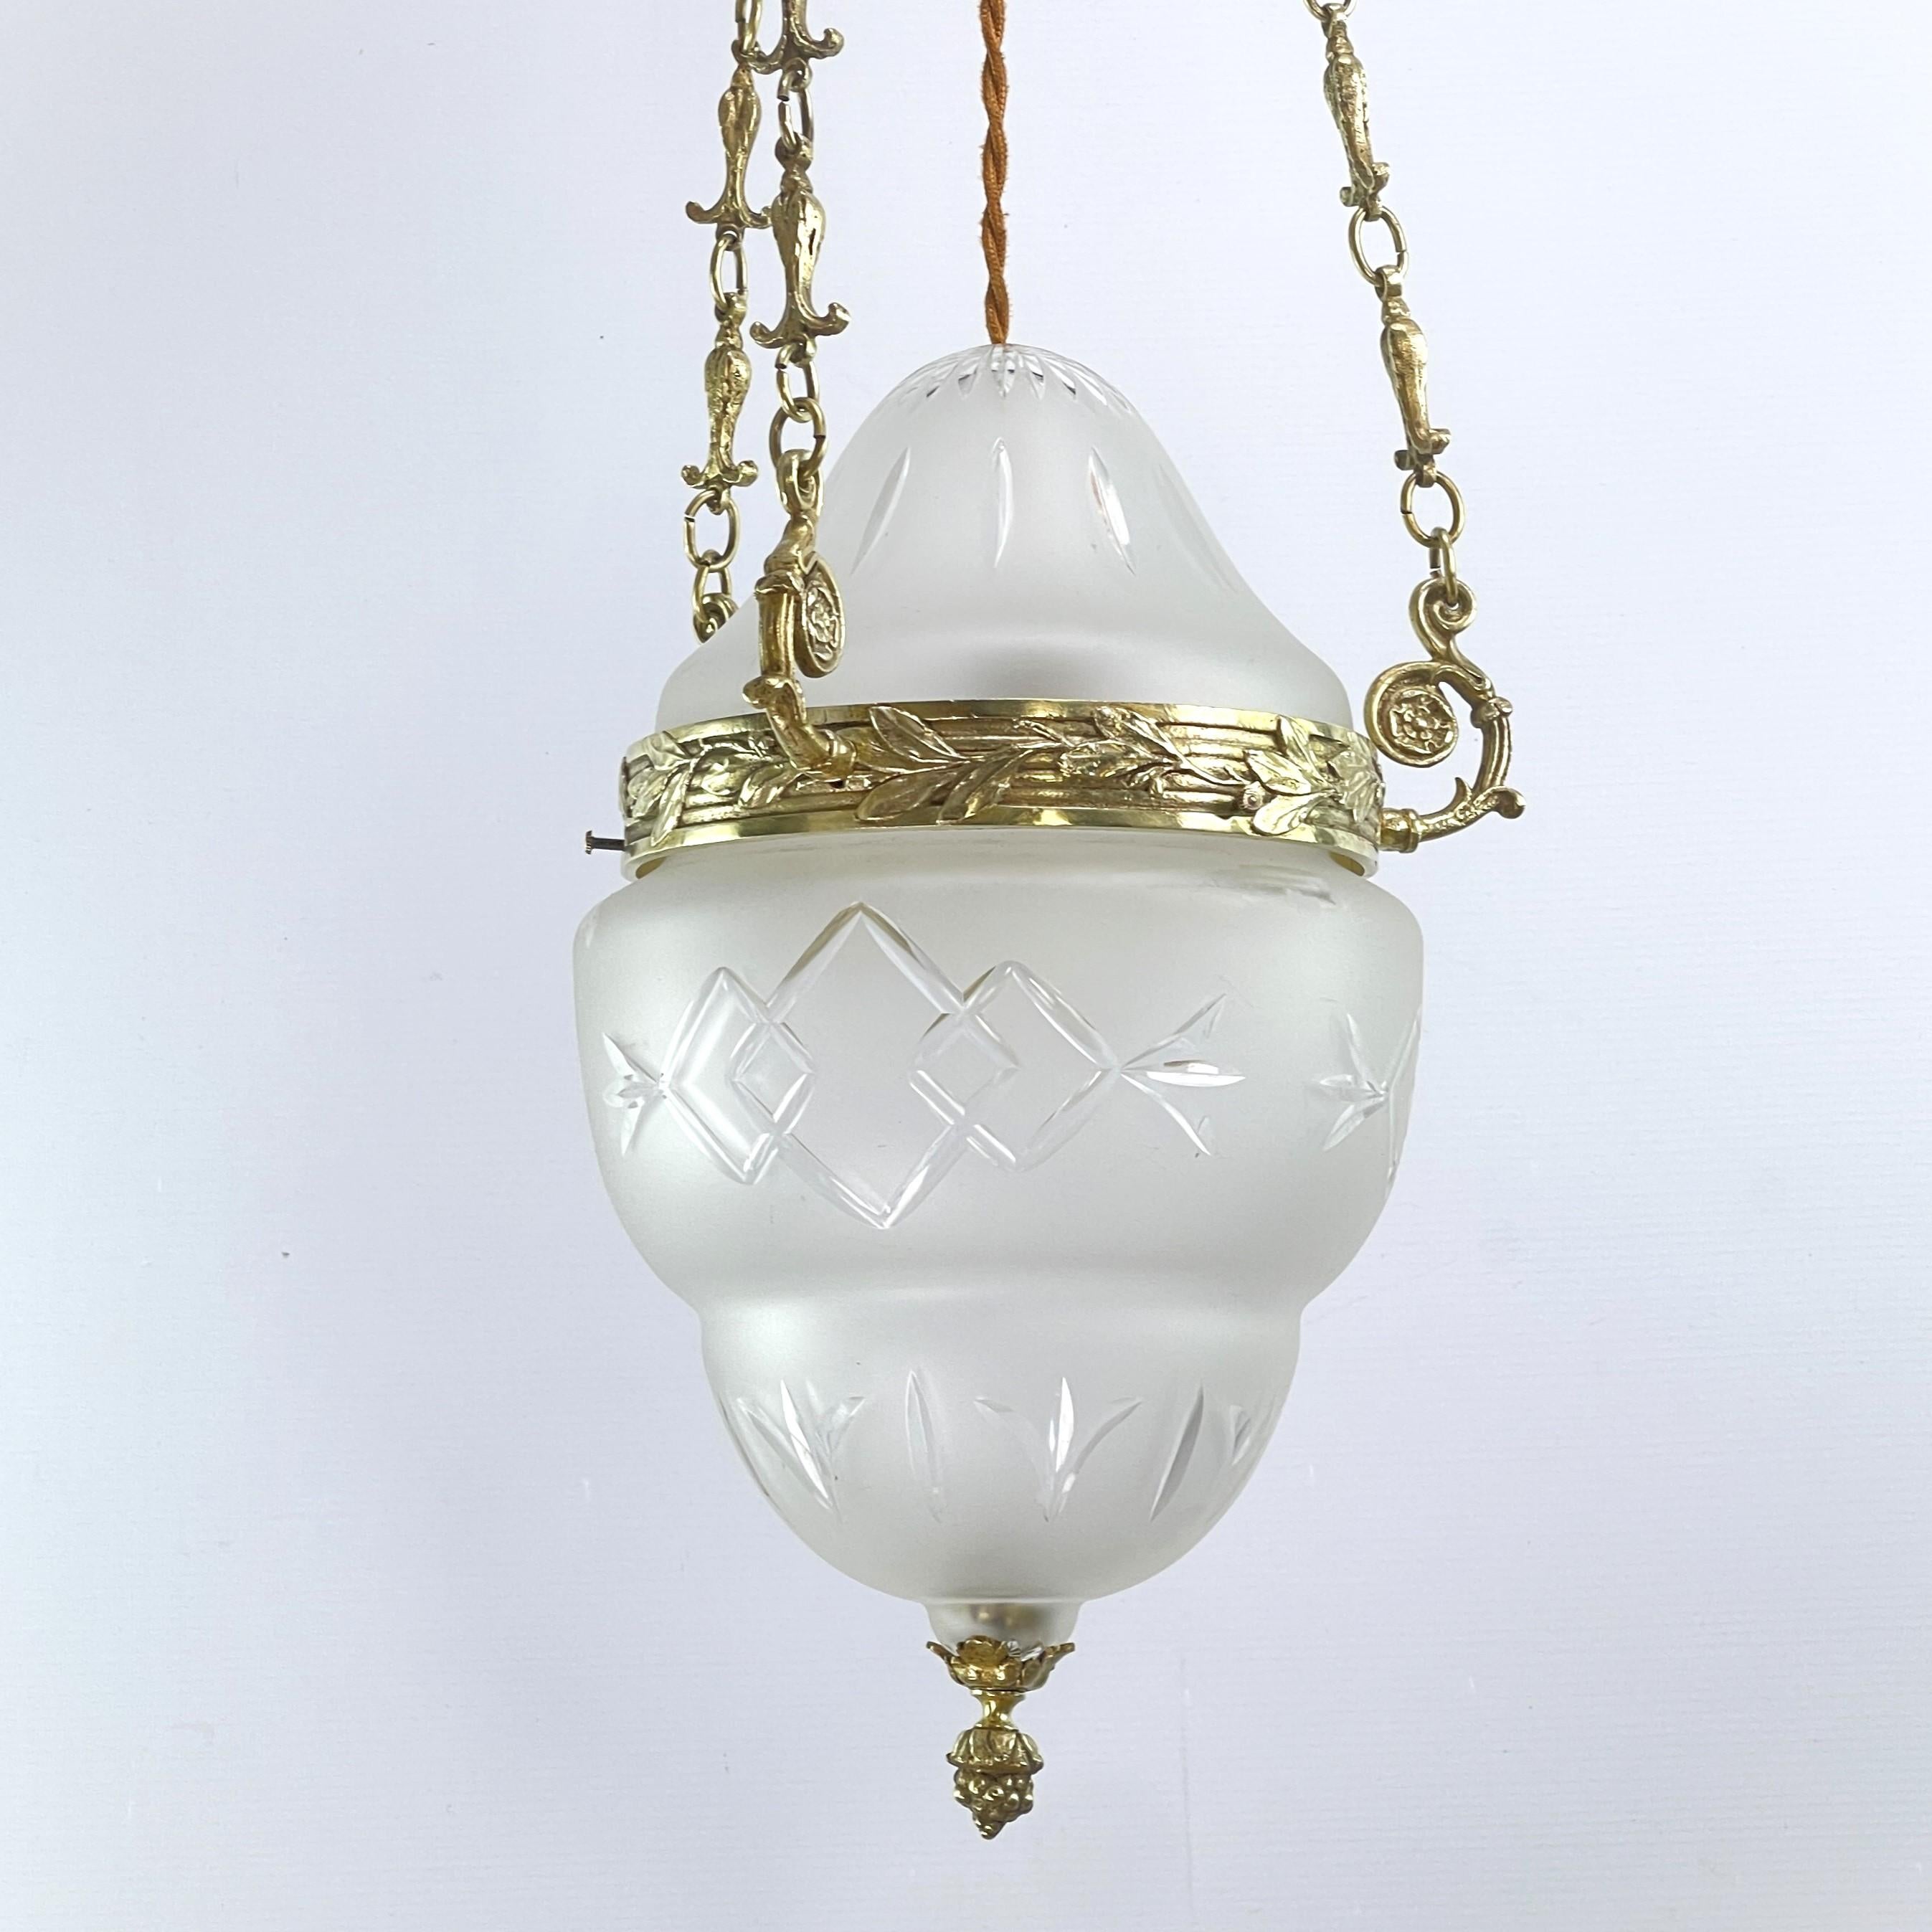 20th Century Art Nouveau Ceiling Lamp Bronze, Hanging Lamp Teardrop Shape, 1900s For Sale